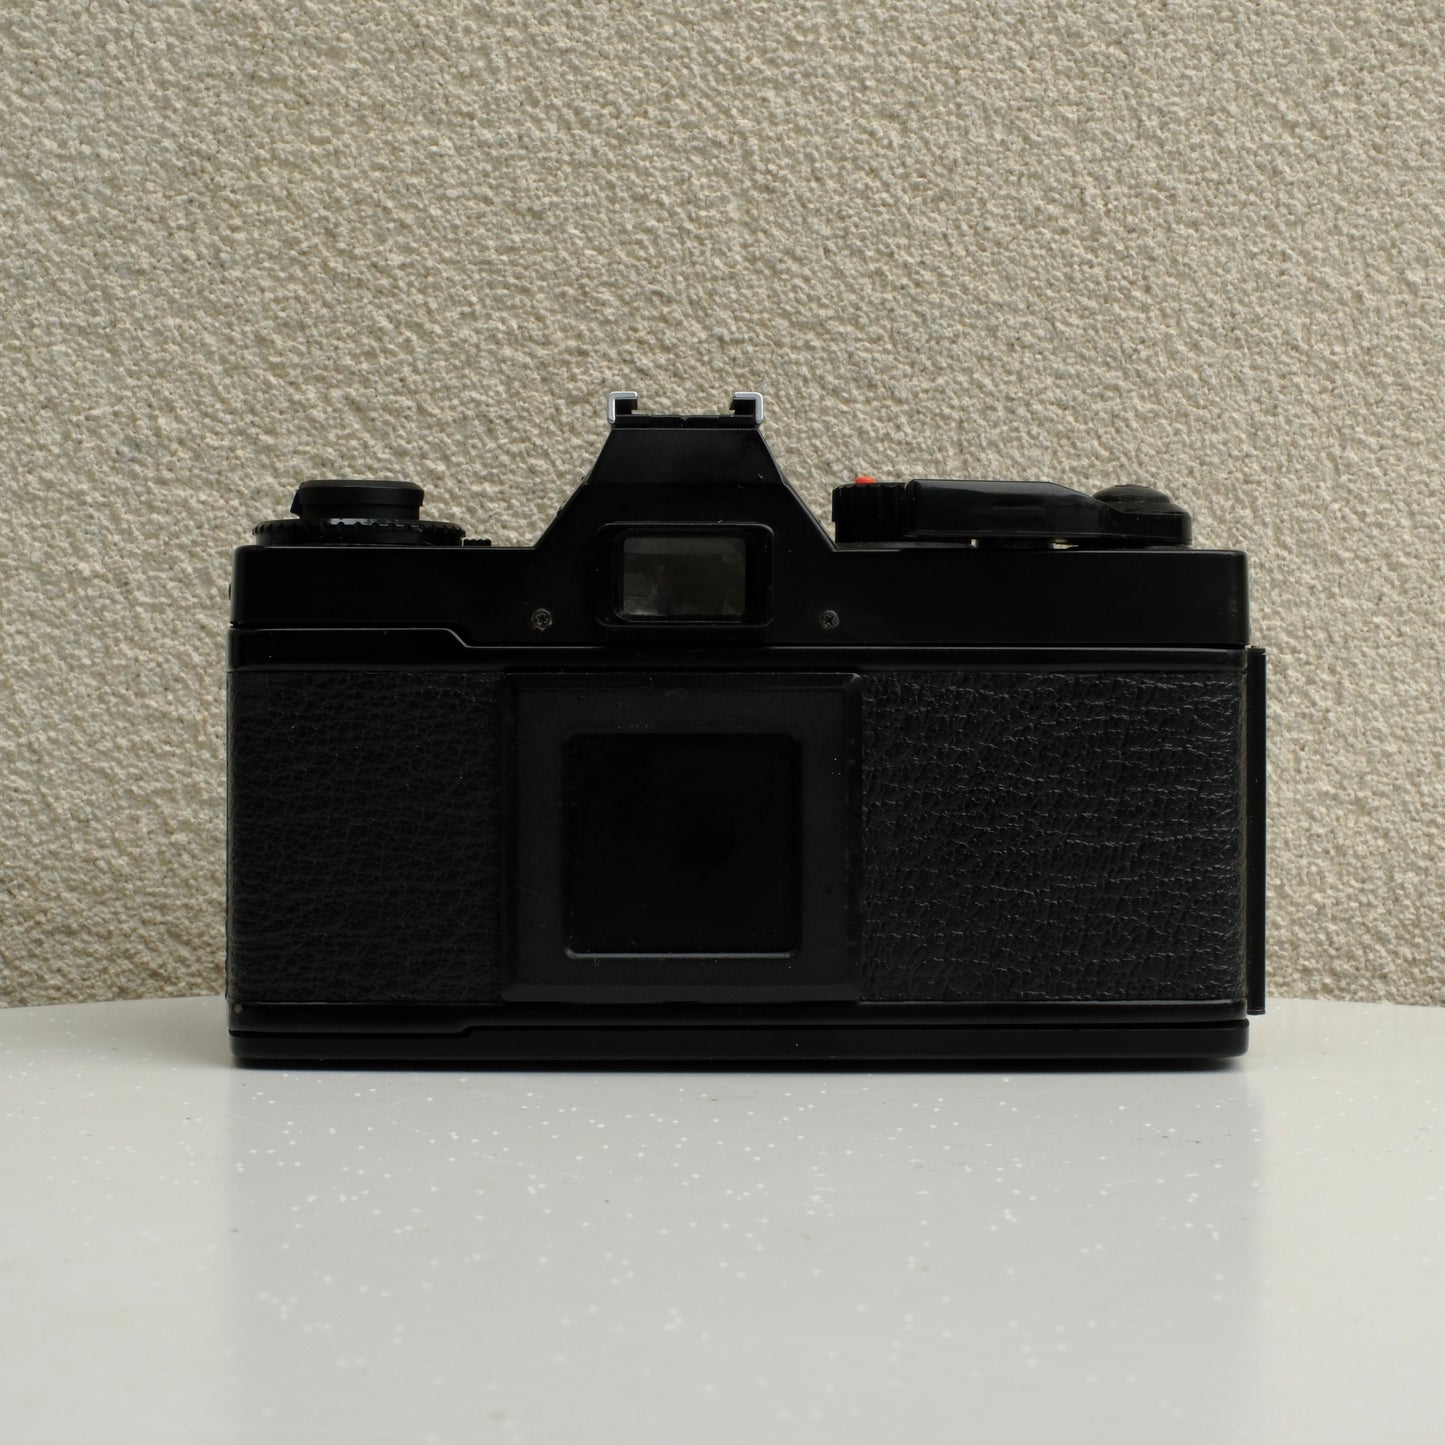 Canon AE-1 Program (50mm f/1.4 lens)